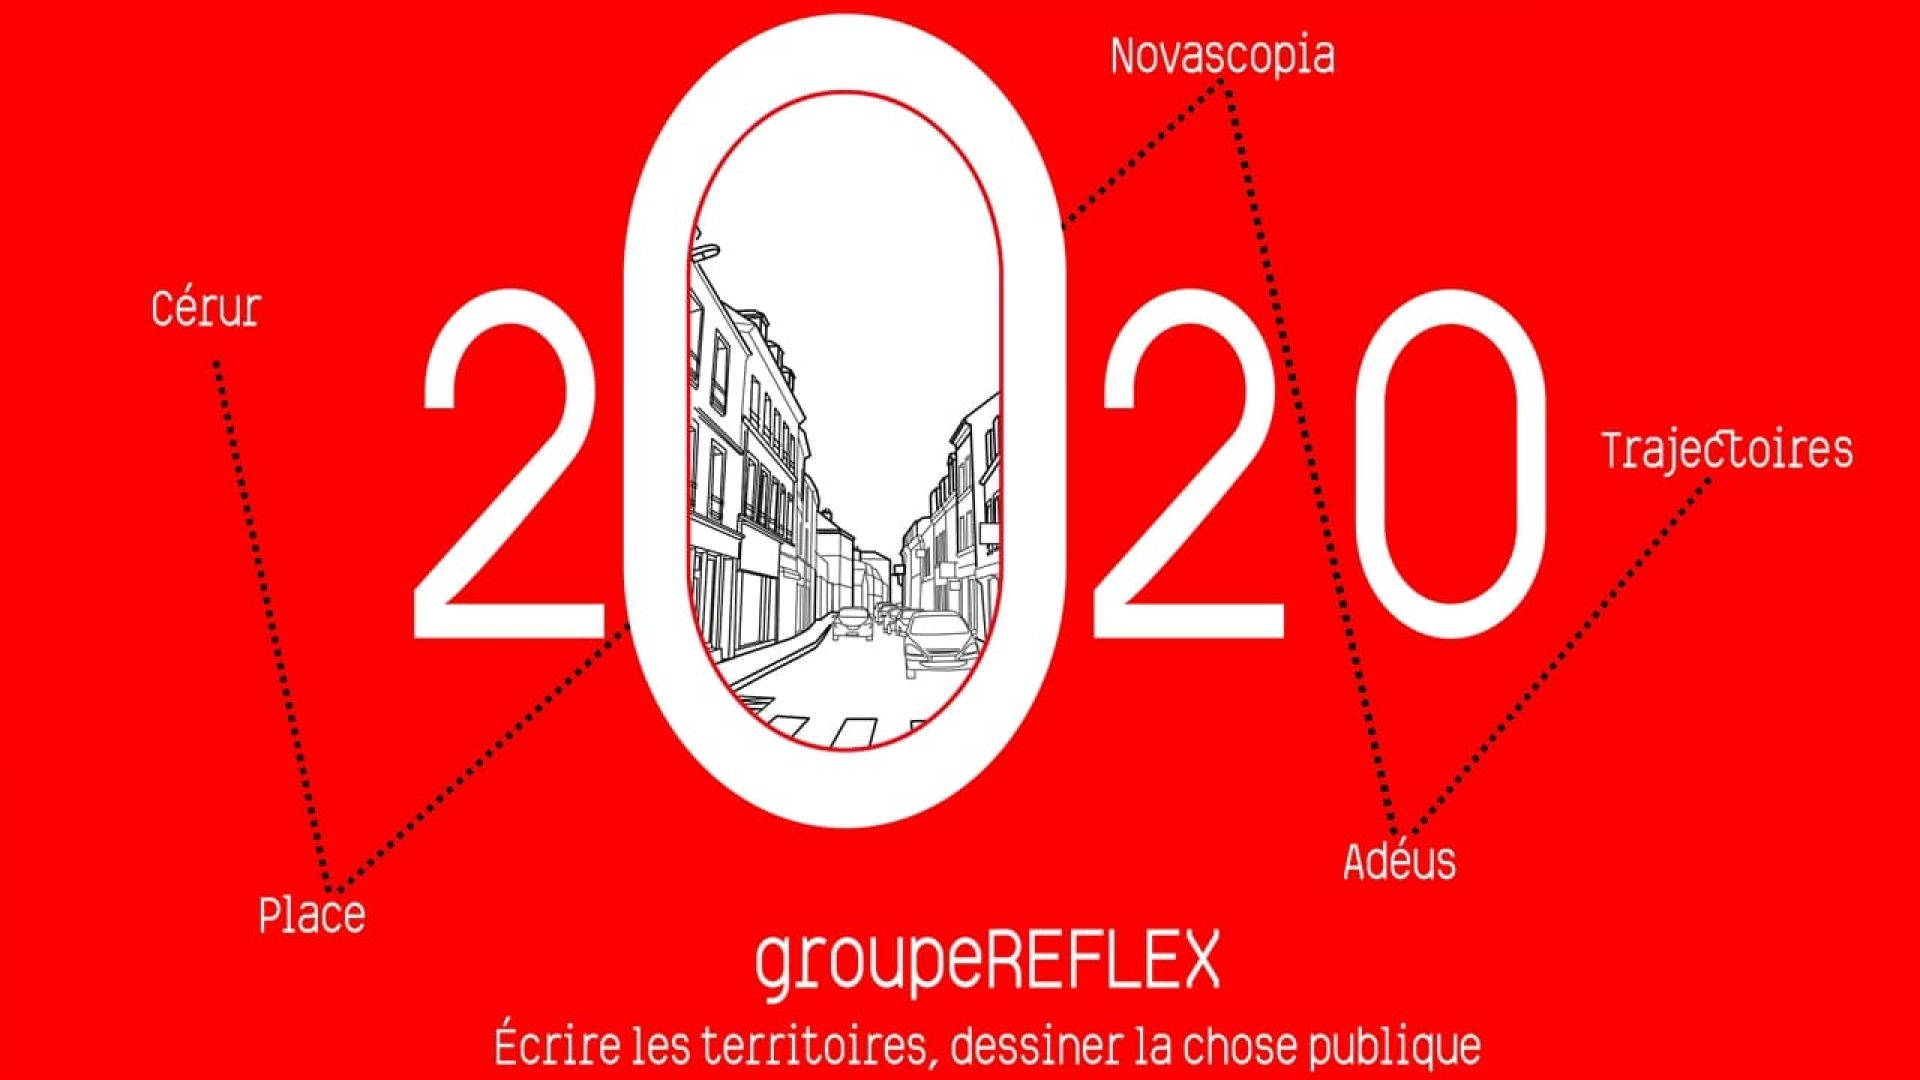 Meilleurs Voeux 2020, de la part de NovaScopia et ses partenaires du groupe Reflex !